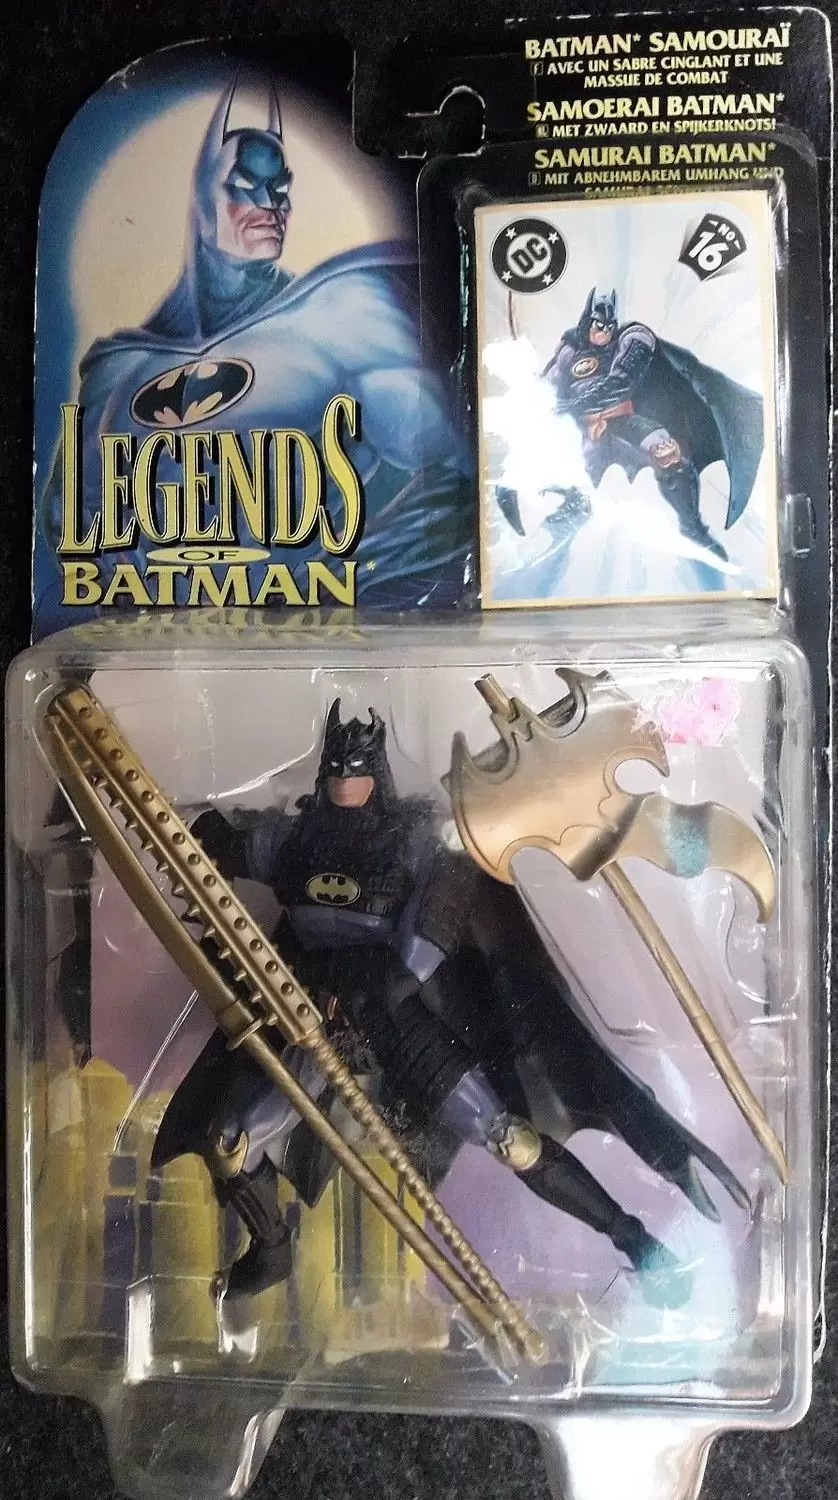 Legends of Batman - Samourai Batman